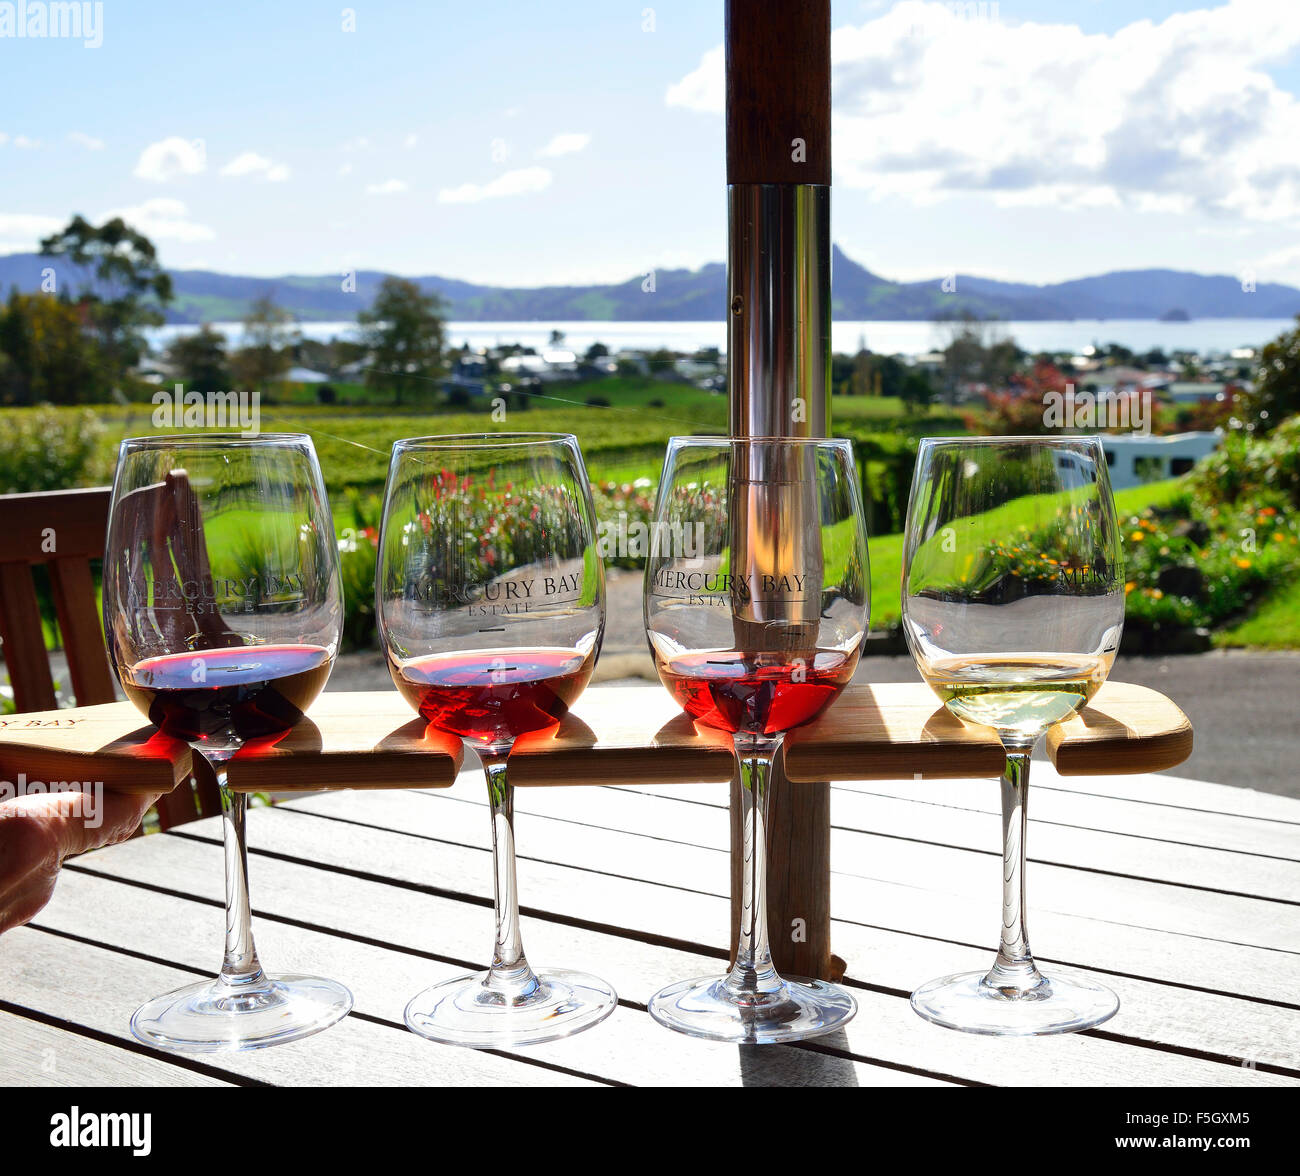 Cata de vinos en Mercury Bay Estate Vineyard, Mercury Bay, North Island, Nueva Zelanda Foto de stock